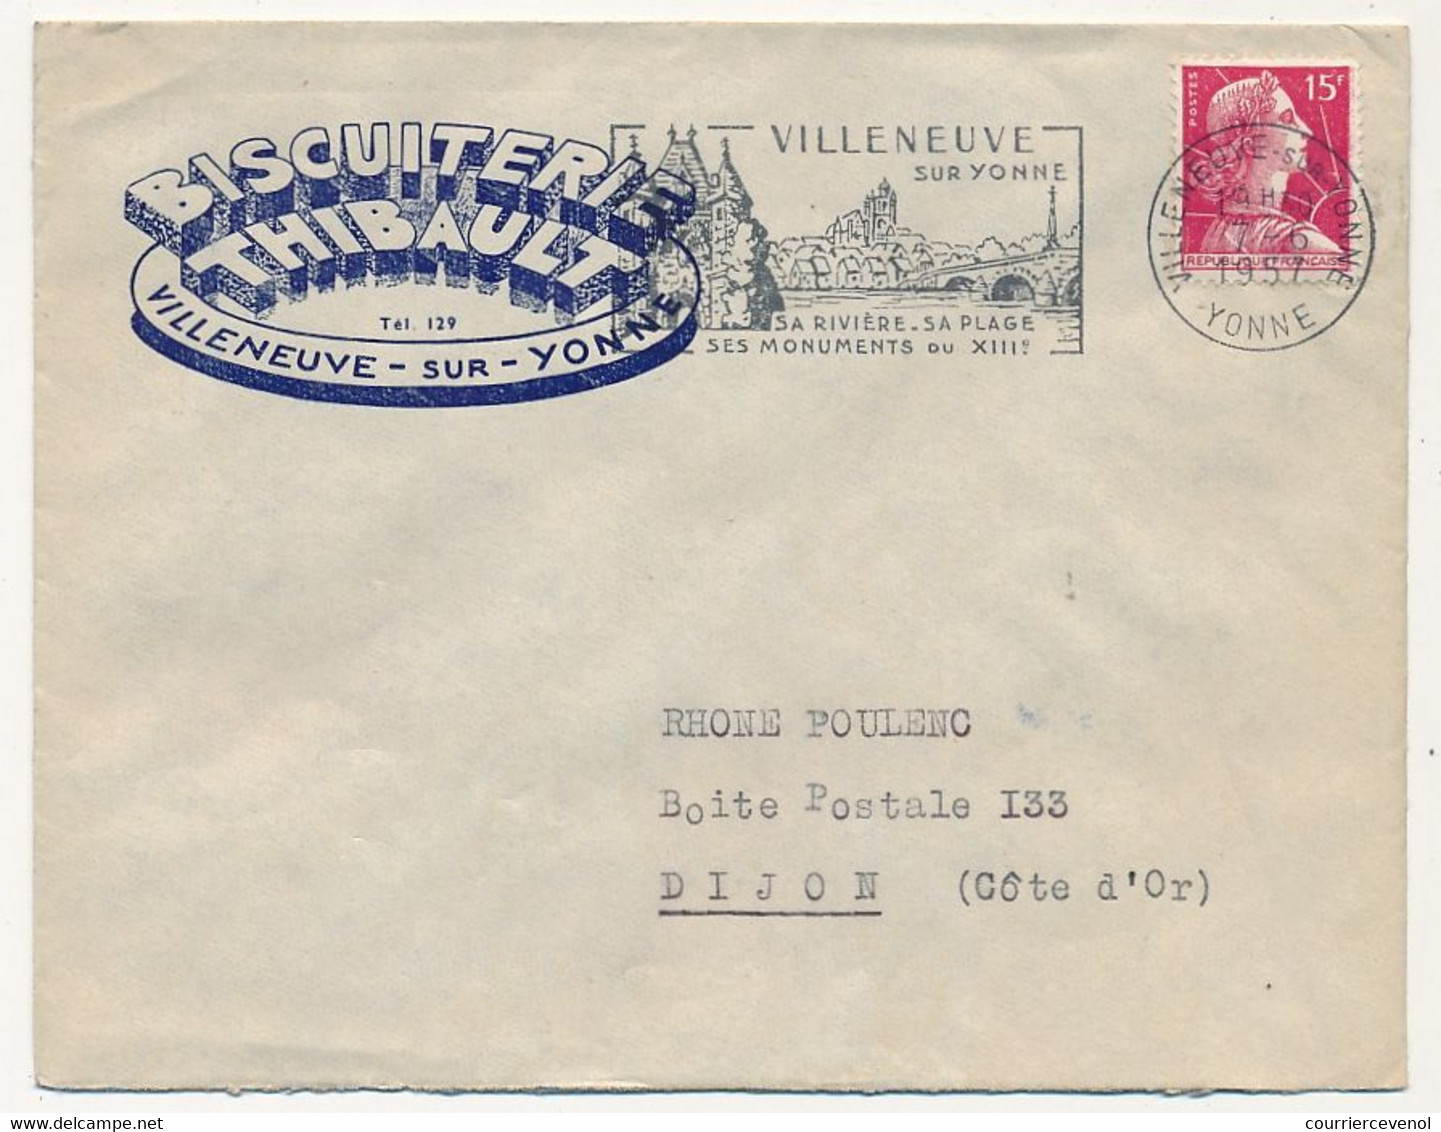 FRANCE - Env. En-tête "Biscuiterie Thibault - Villeneuve S/Yonne" Affr Muller 1957 - Lebensmittel